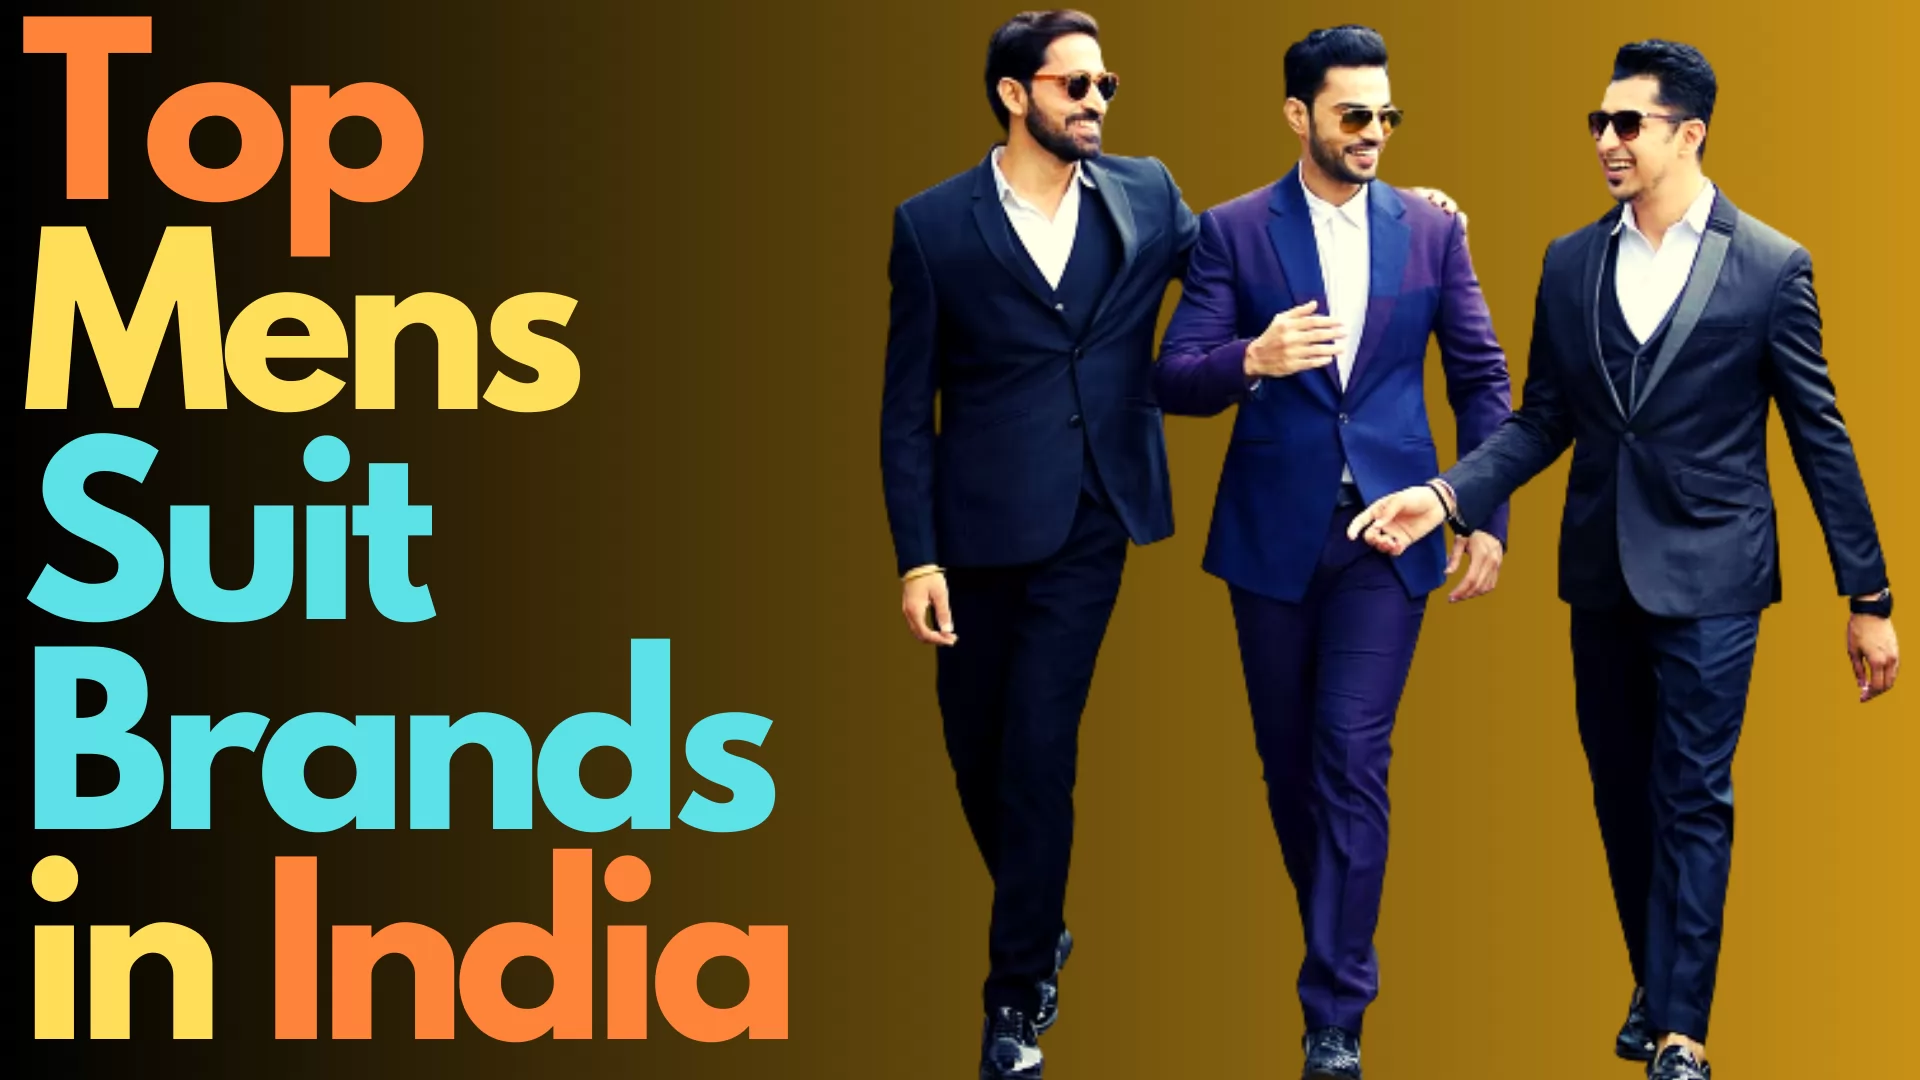 Top Mens Suit Brands in India